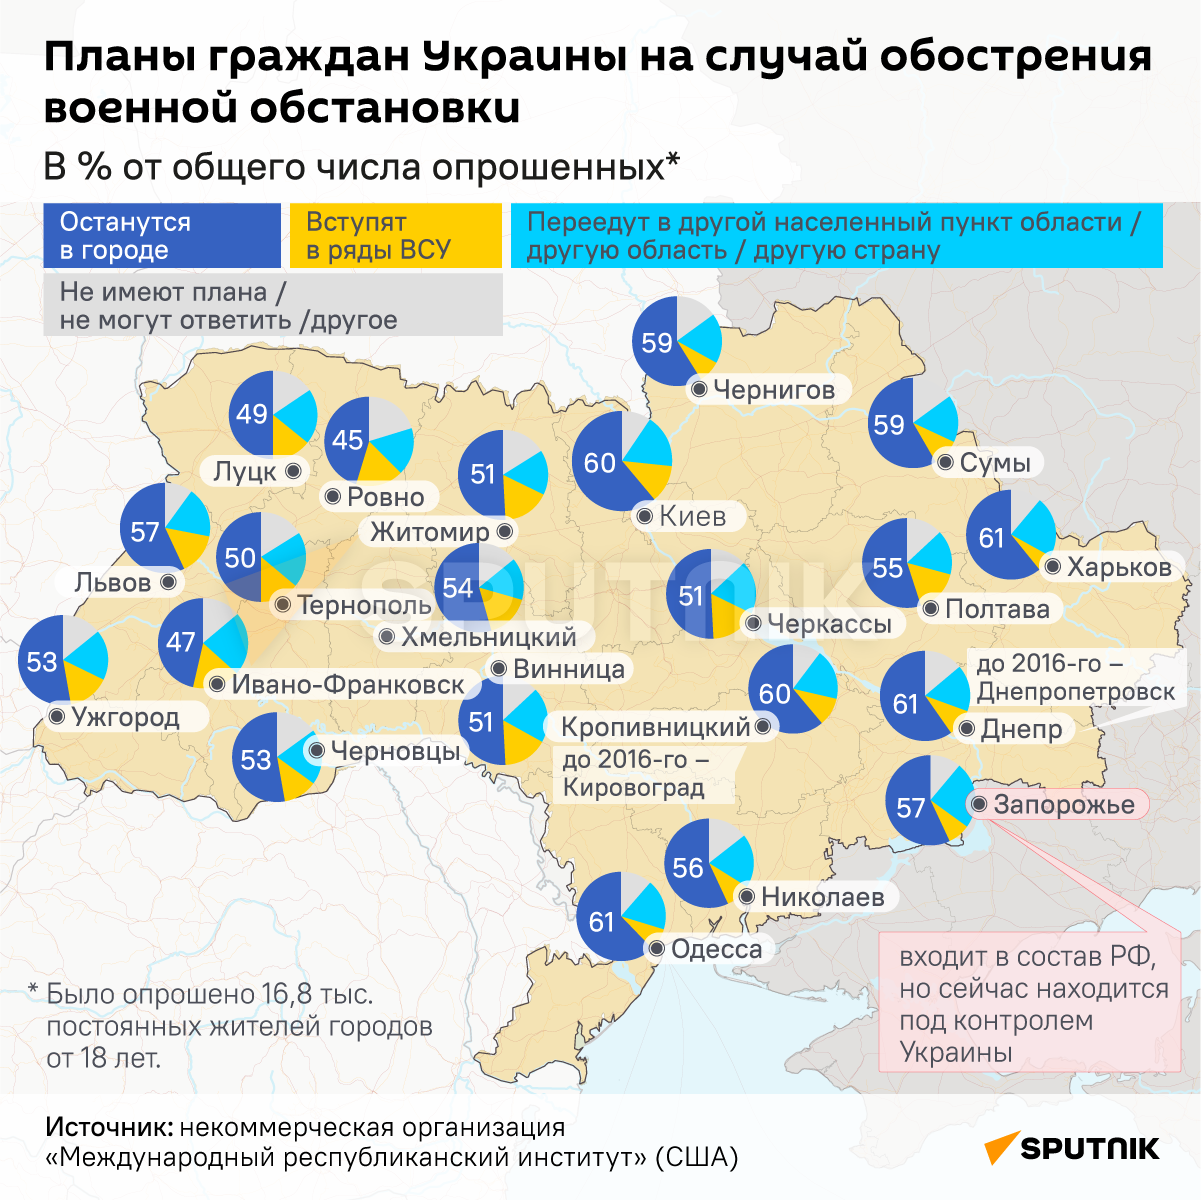 Инфографика: Планы граждан Украины на случай обострения военной обстановки - Sputnik Азербайджан